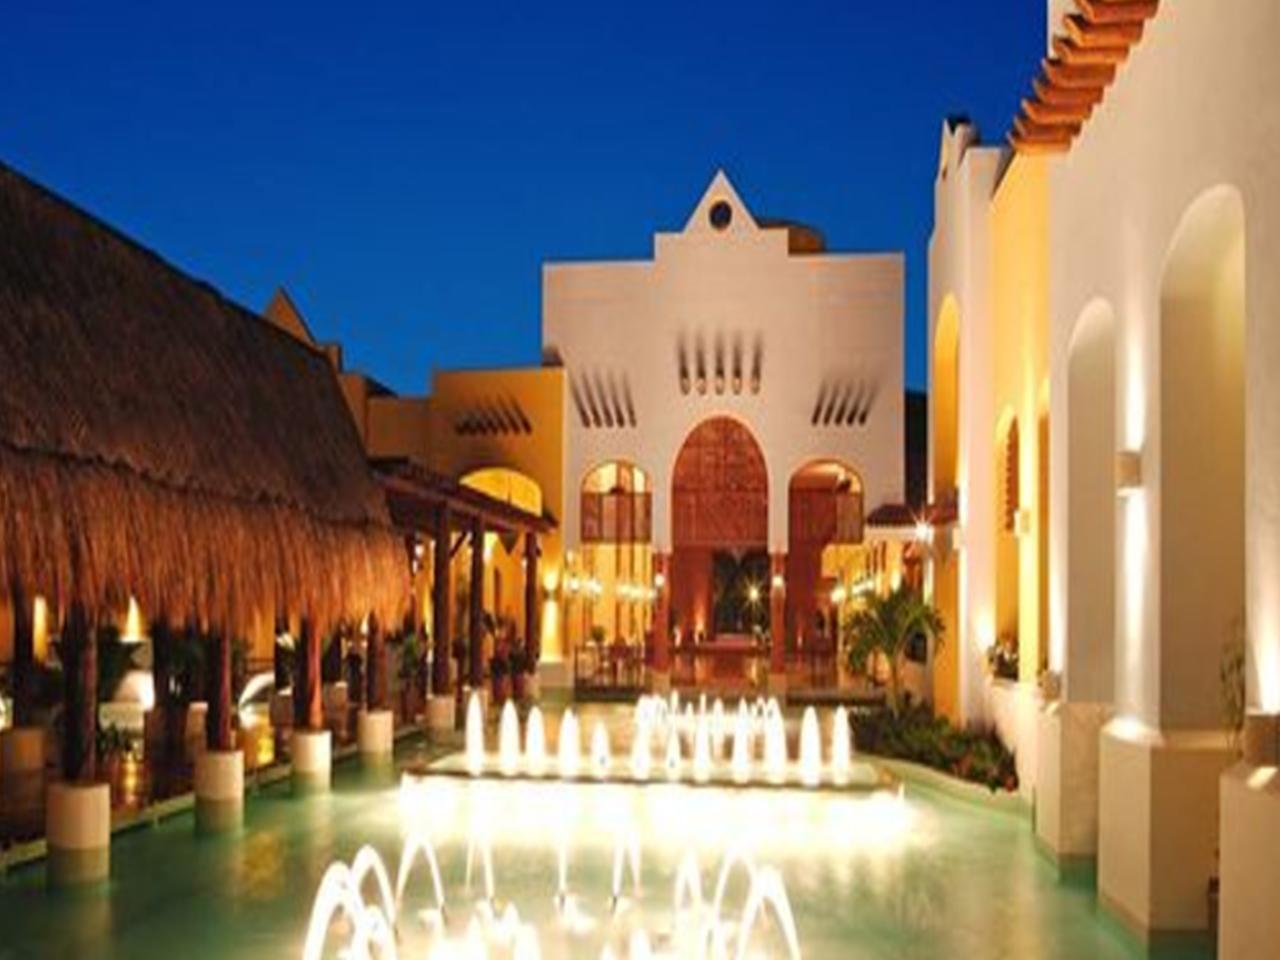 Paquetes de bodas en la playa - hotel Iberostar - Iberostar - Paquetes de boda en Cancun - Bodas en cancun